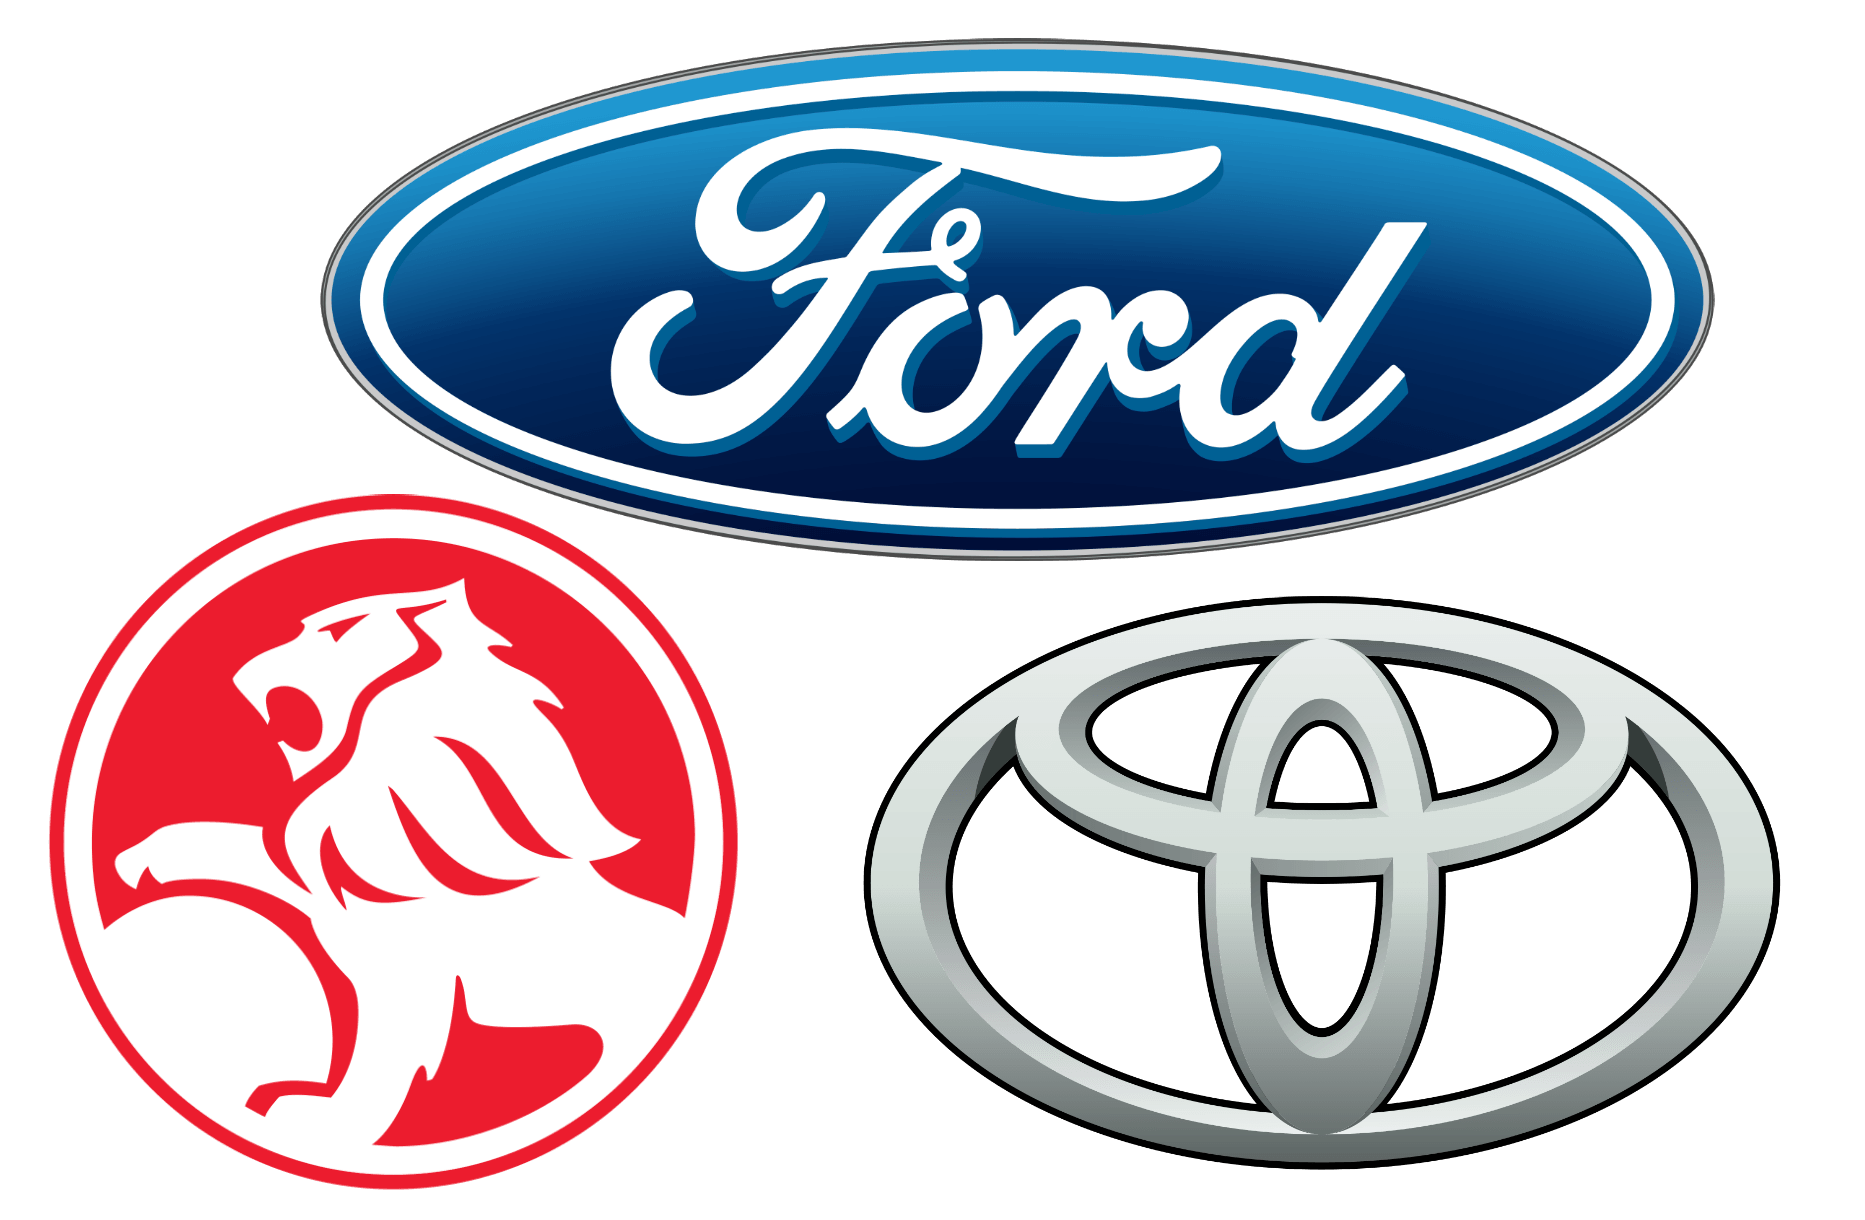 Foreign Automotive Logo - Australian Car Brands, Companies and Manufacturers | Car Brand Names.com